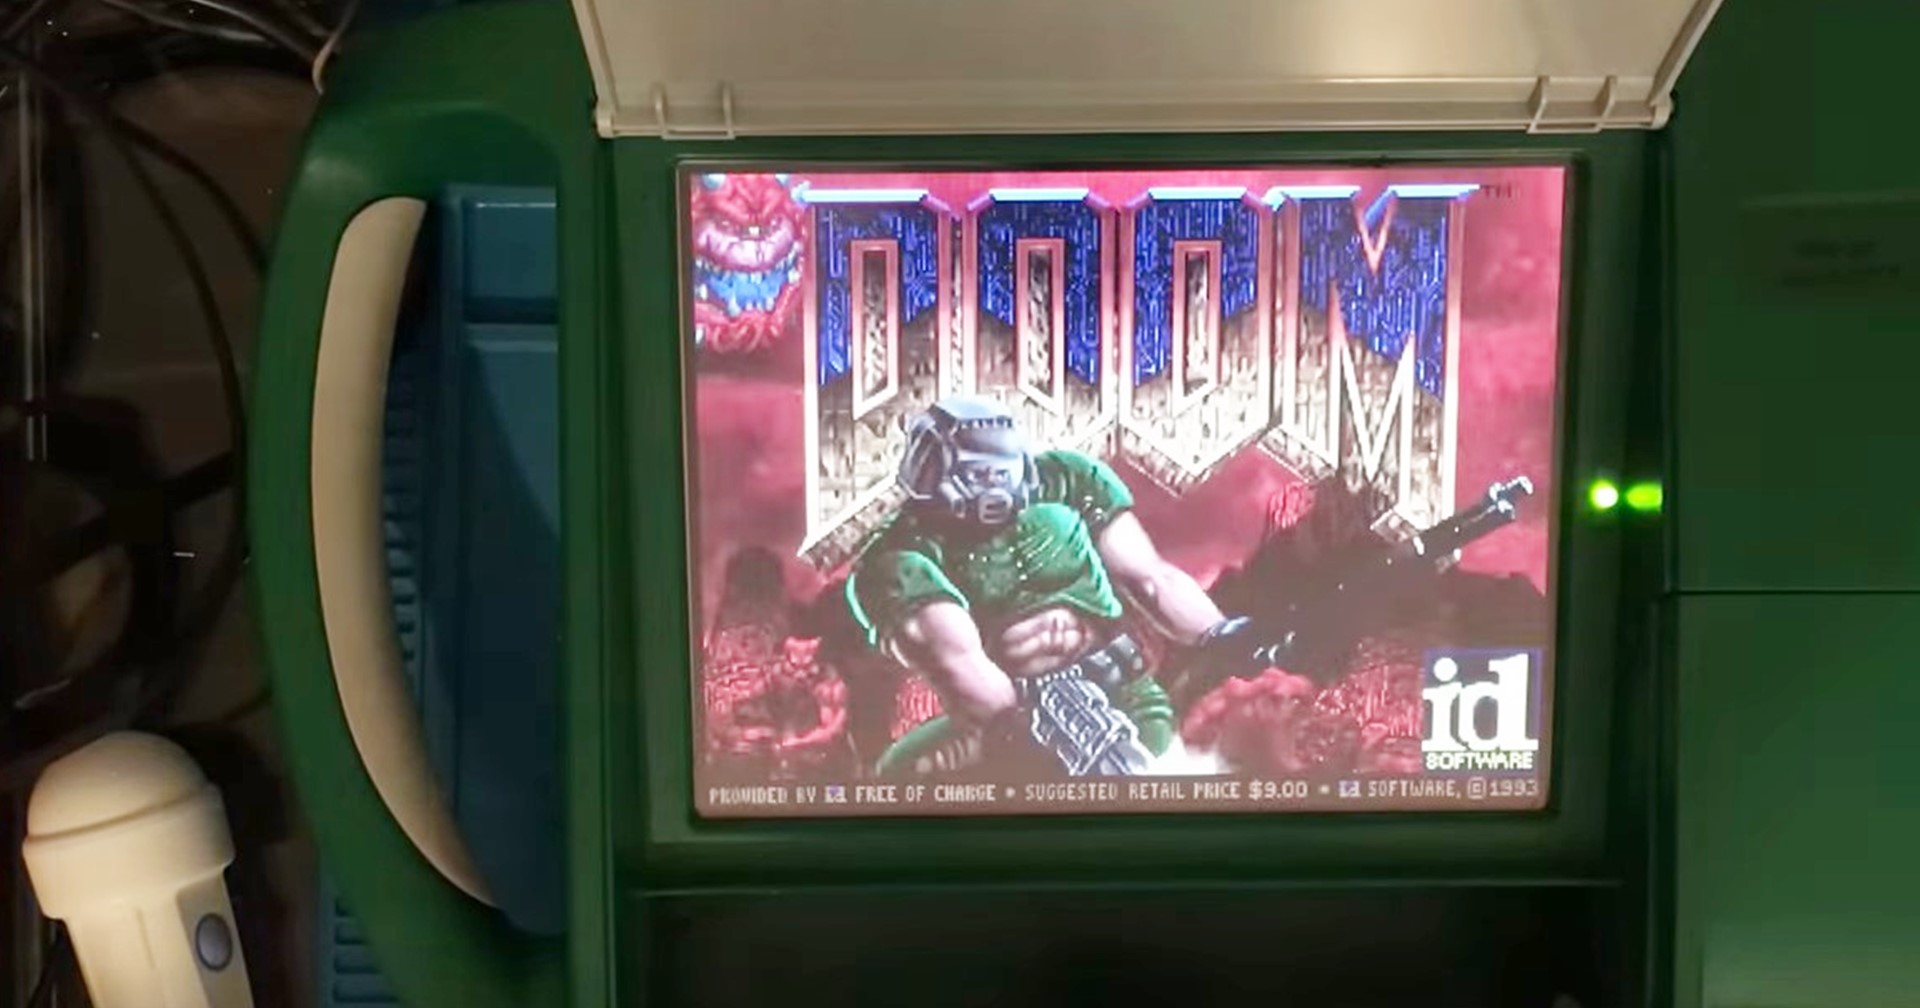 เล่นได้ทุกที่จริง ๆ ชมคลิปเล่น Doom บนเครื่องอัลตราซาวด์